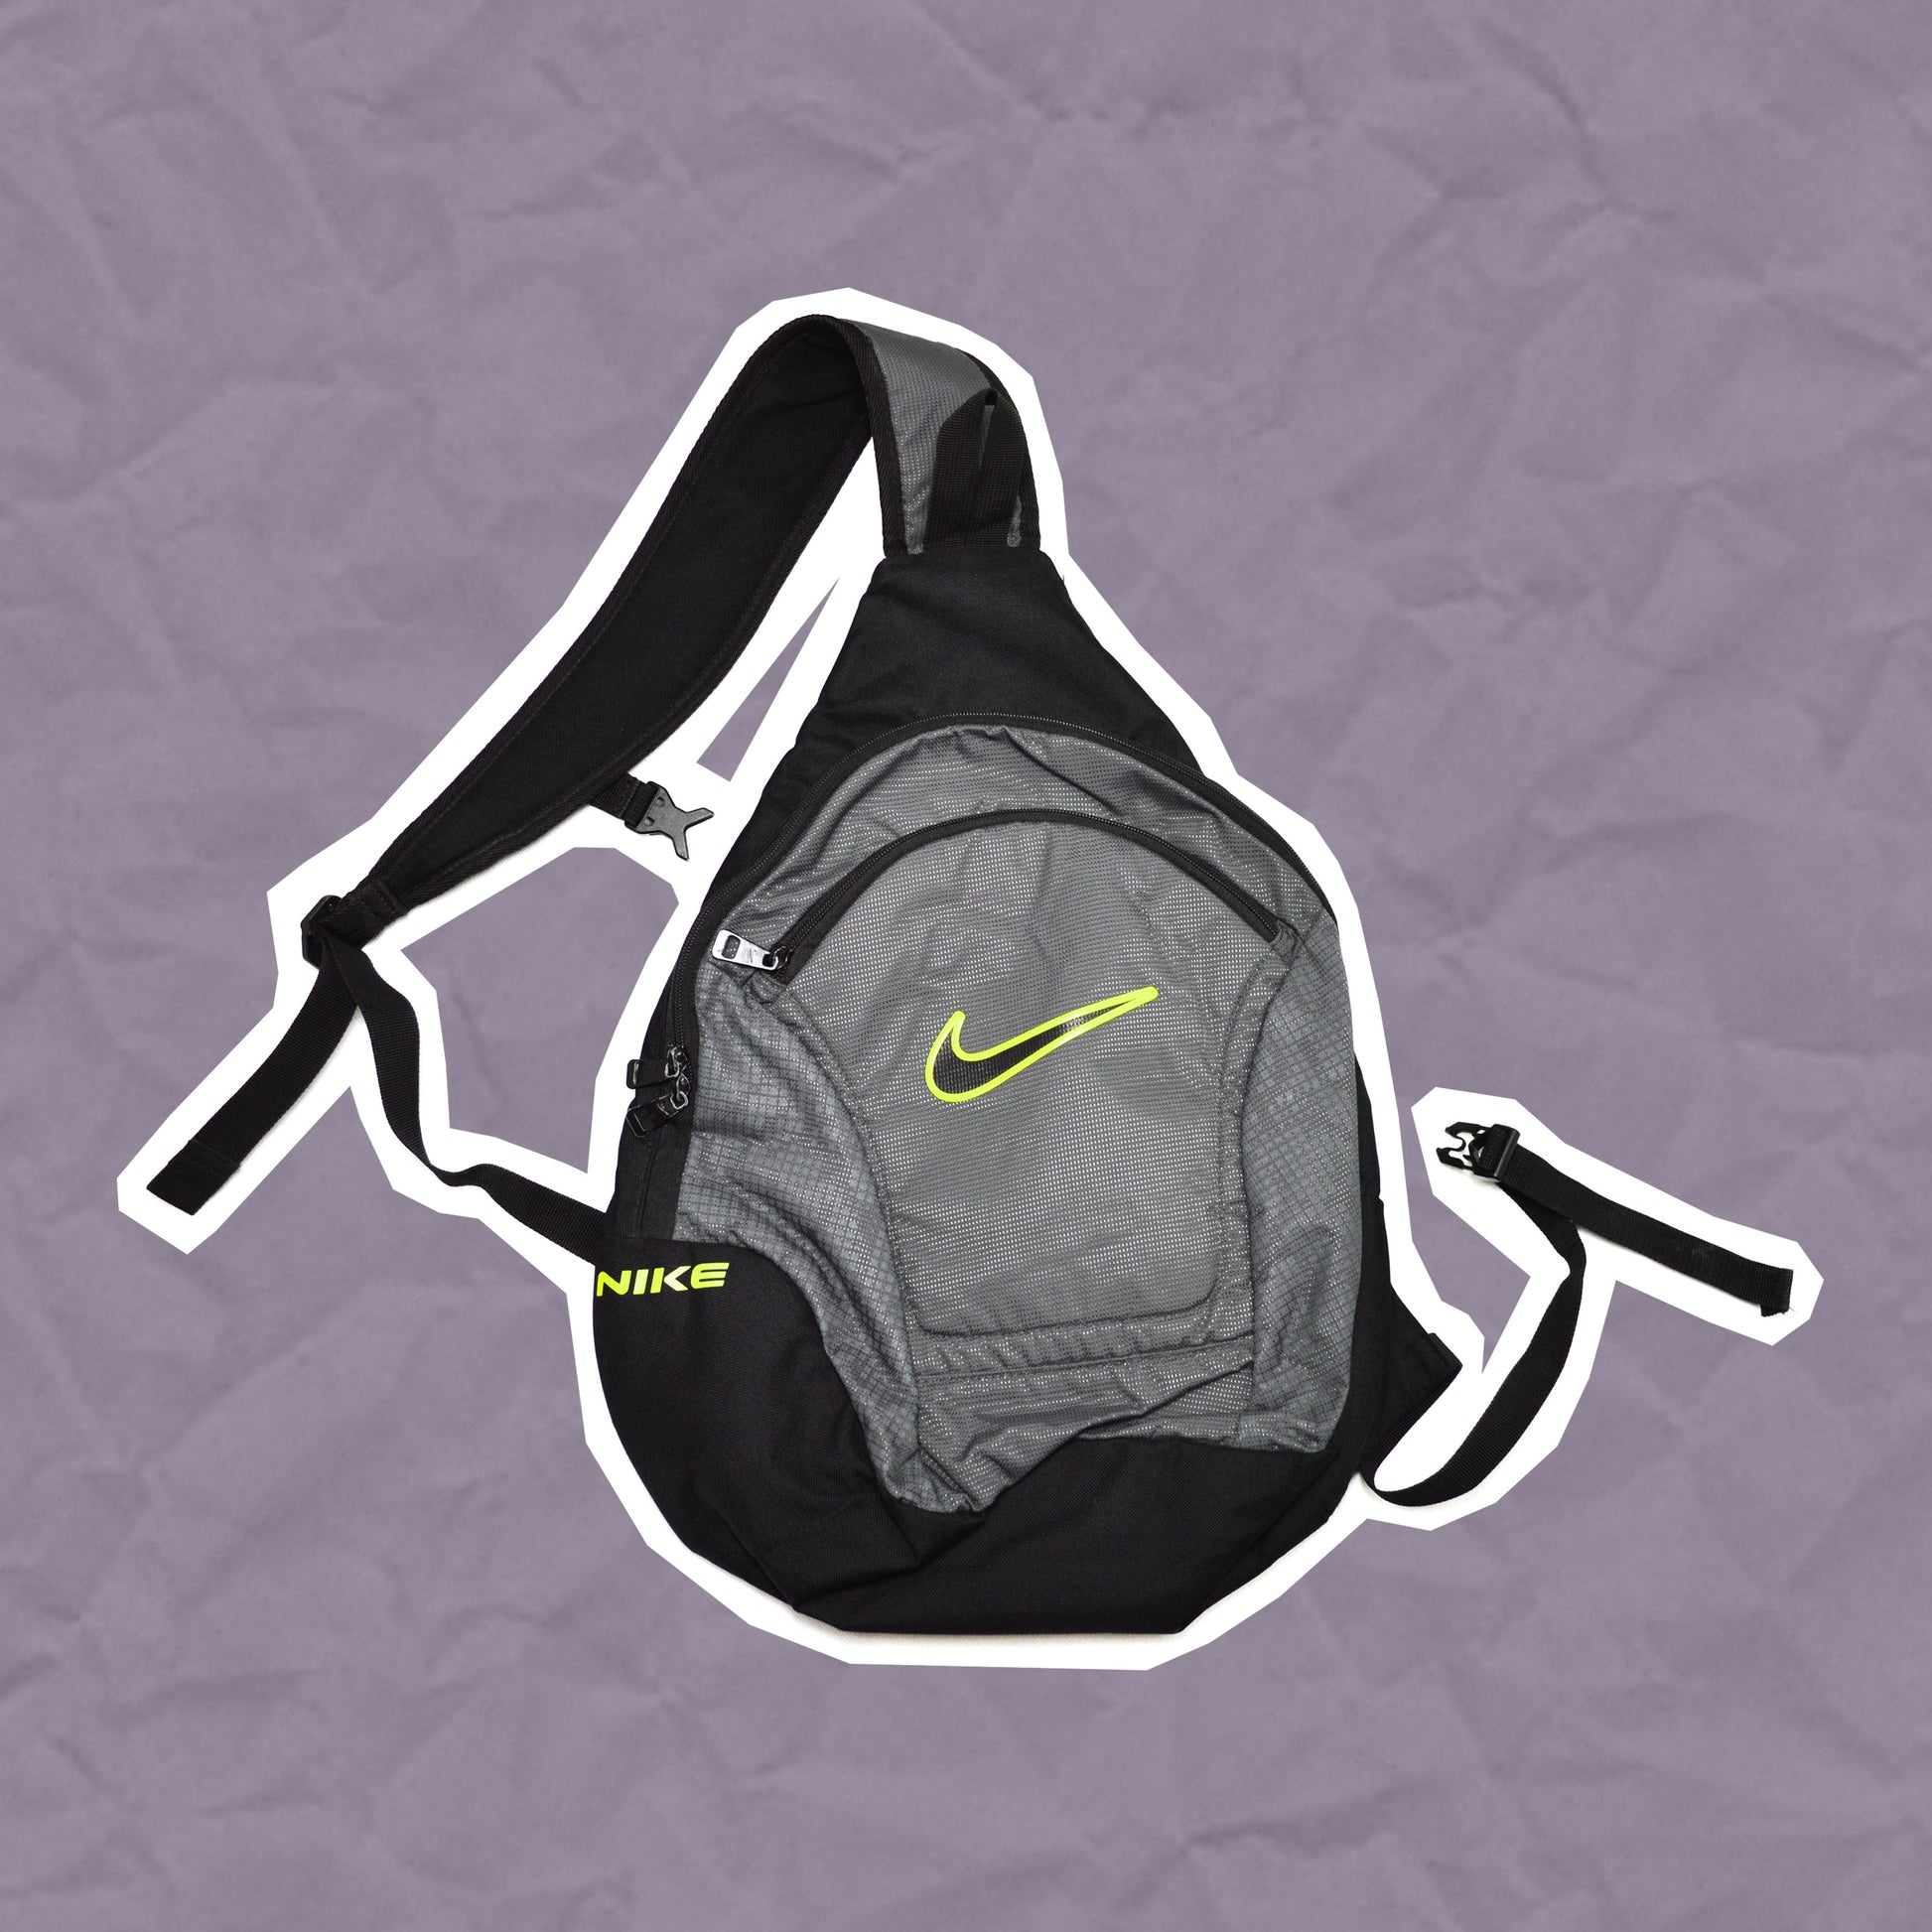 Nike Volt Tri-harness Tactical Bag (OS)